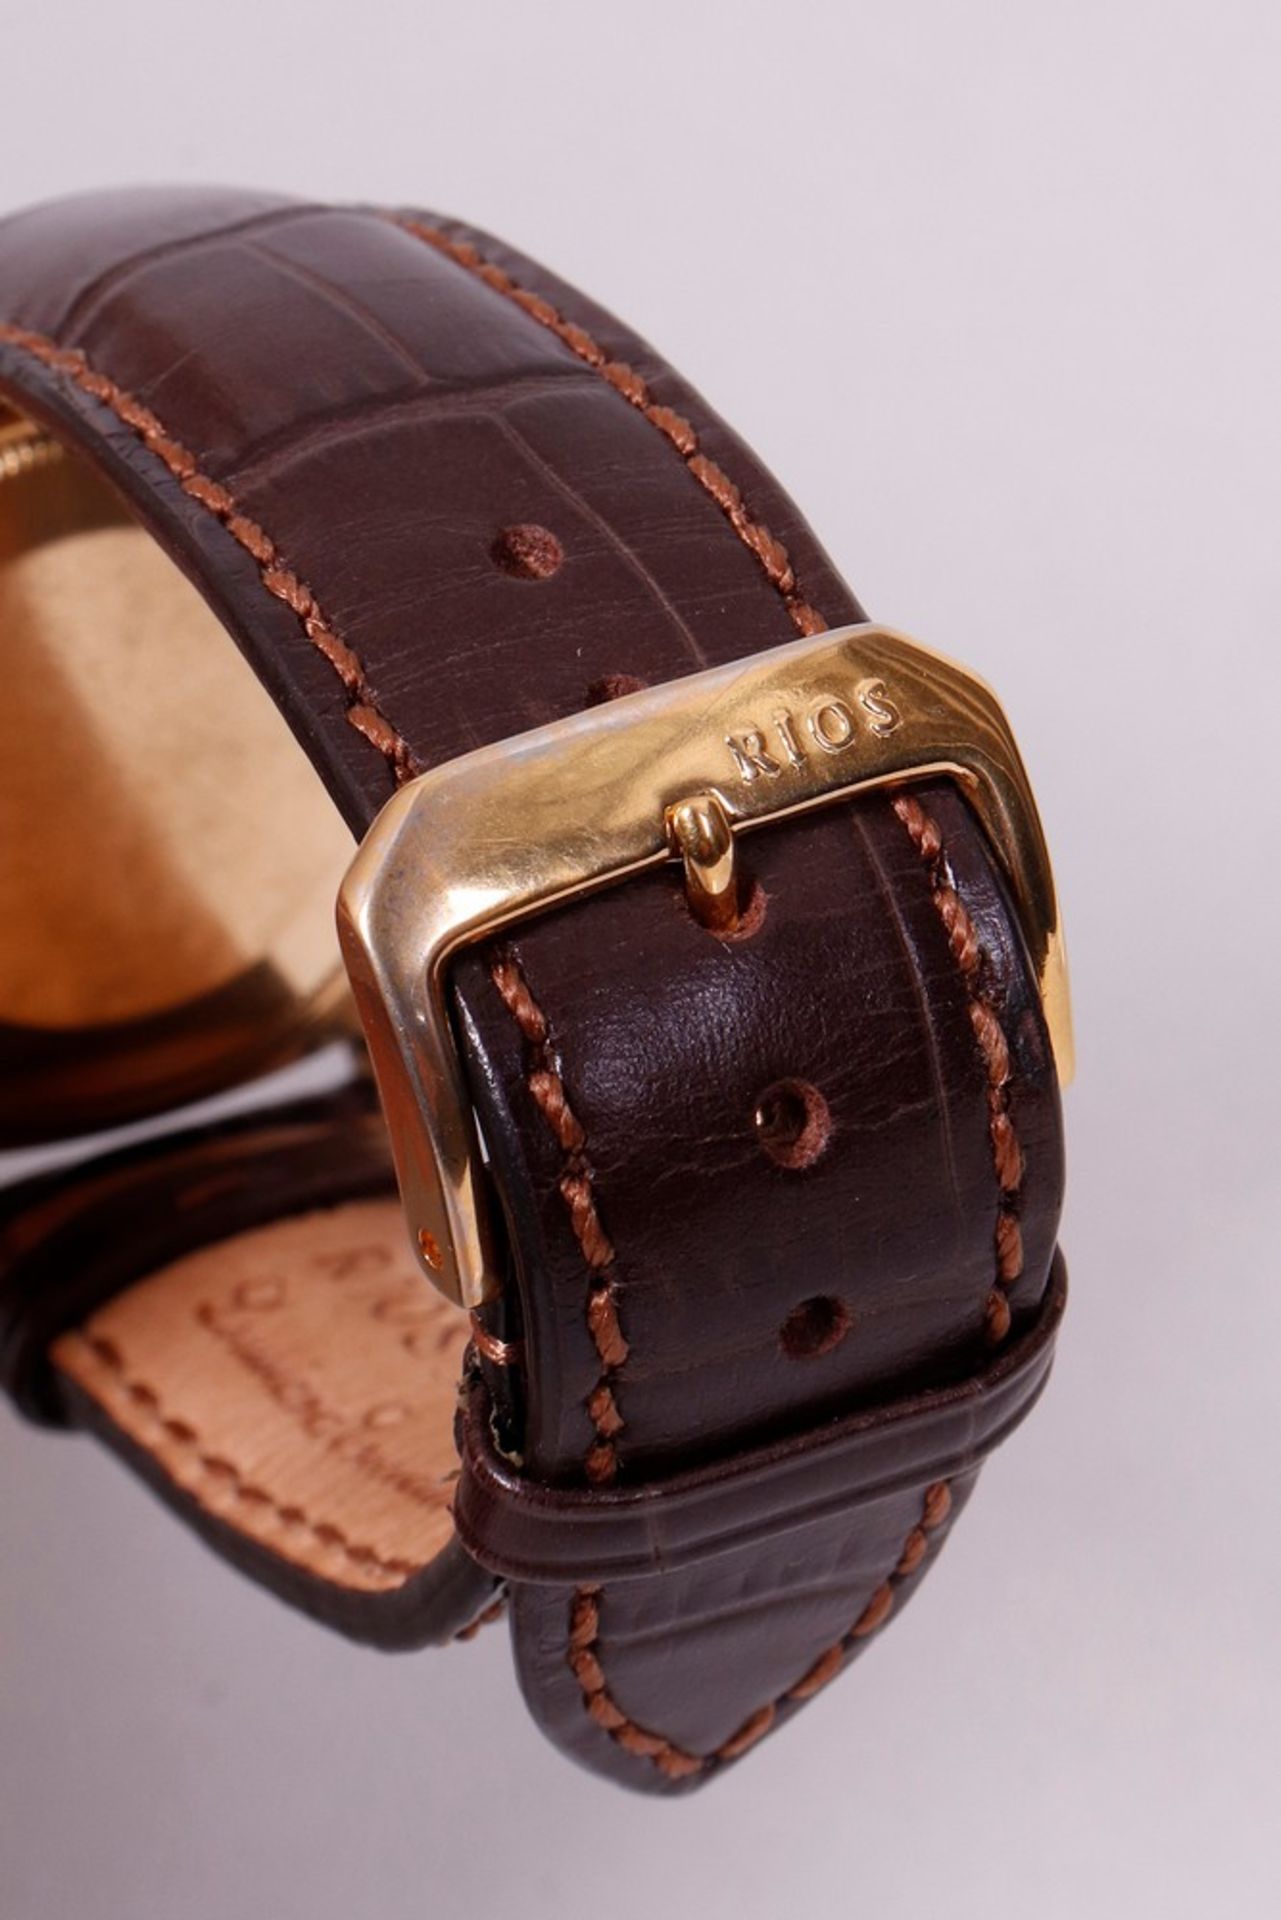 Gent's wristwatch, 750 gold, Rolex Datejust, around 1971 - Image 5 of 5